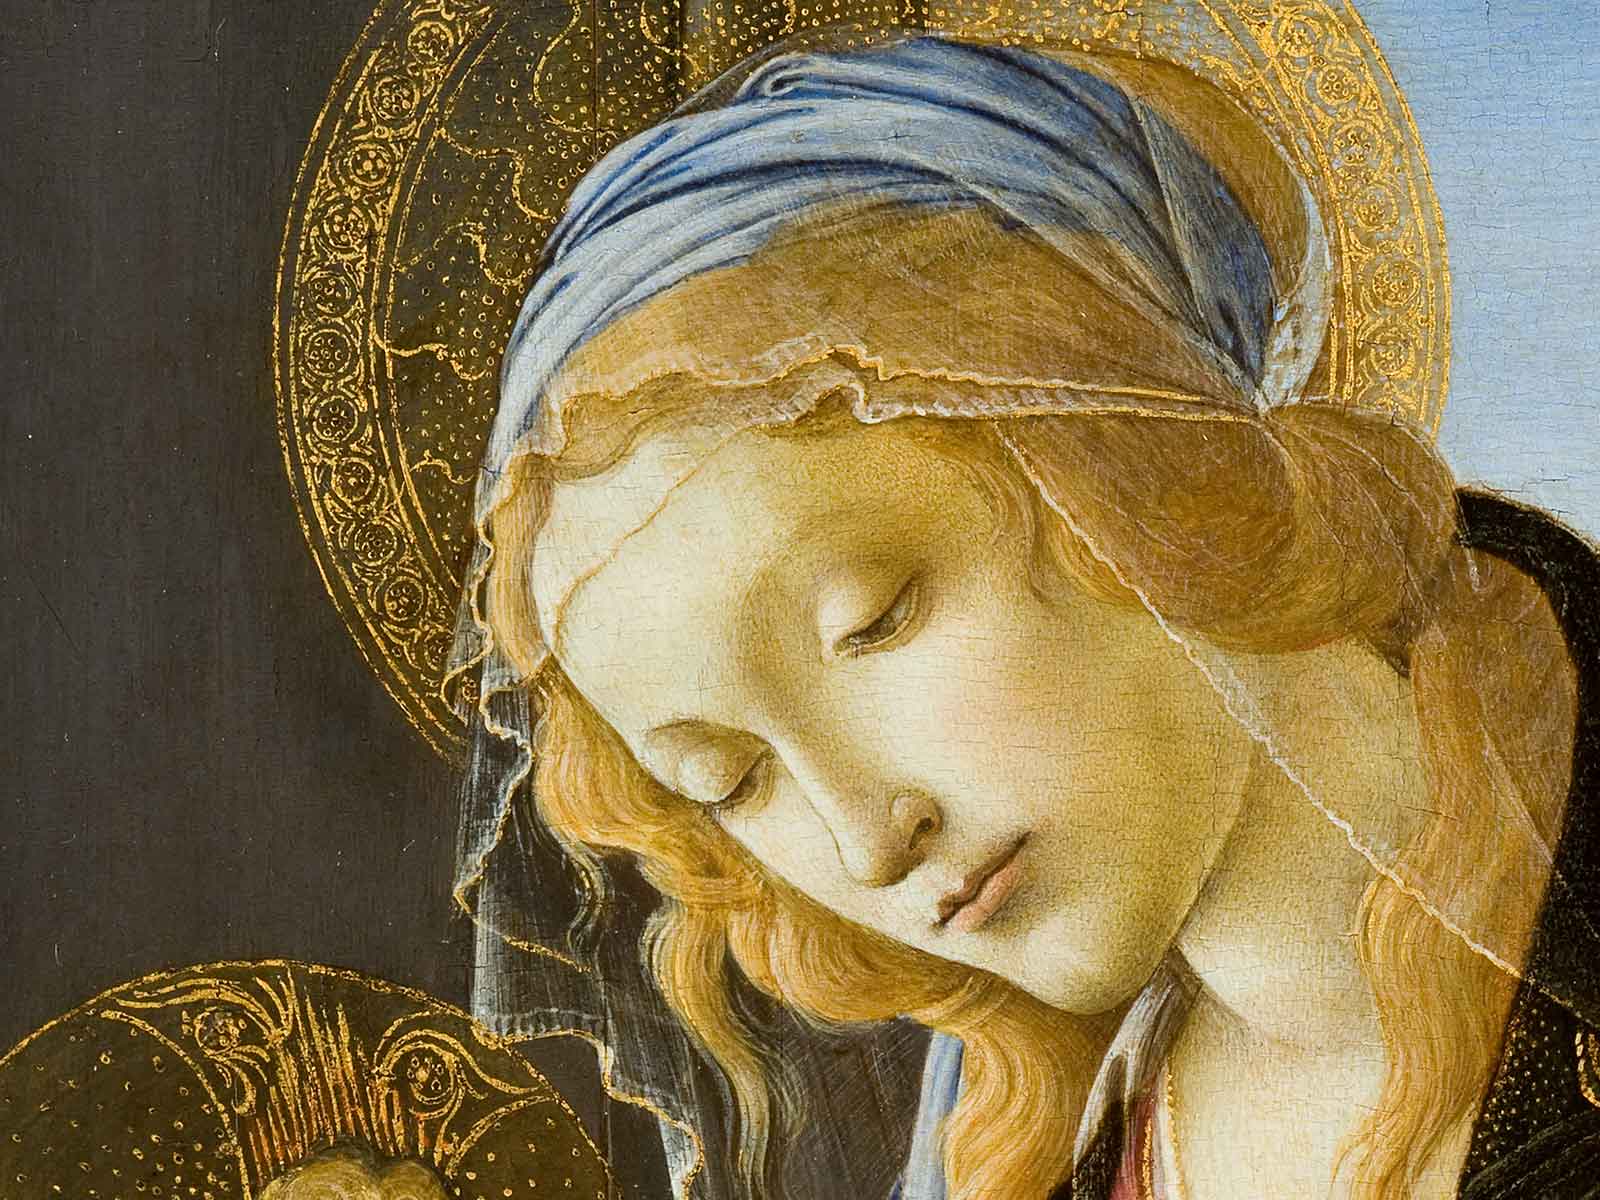 Dettaglio della Madonna con il bambino di Sandro Botticelli